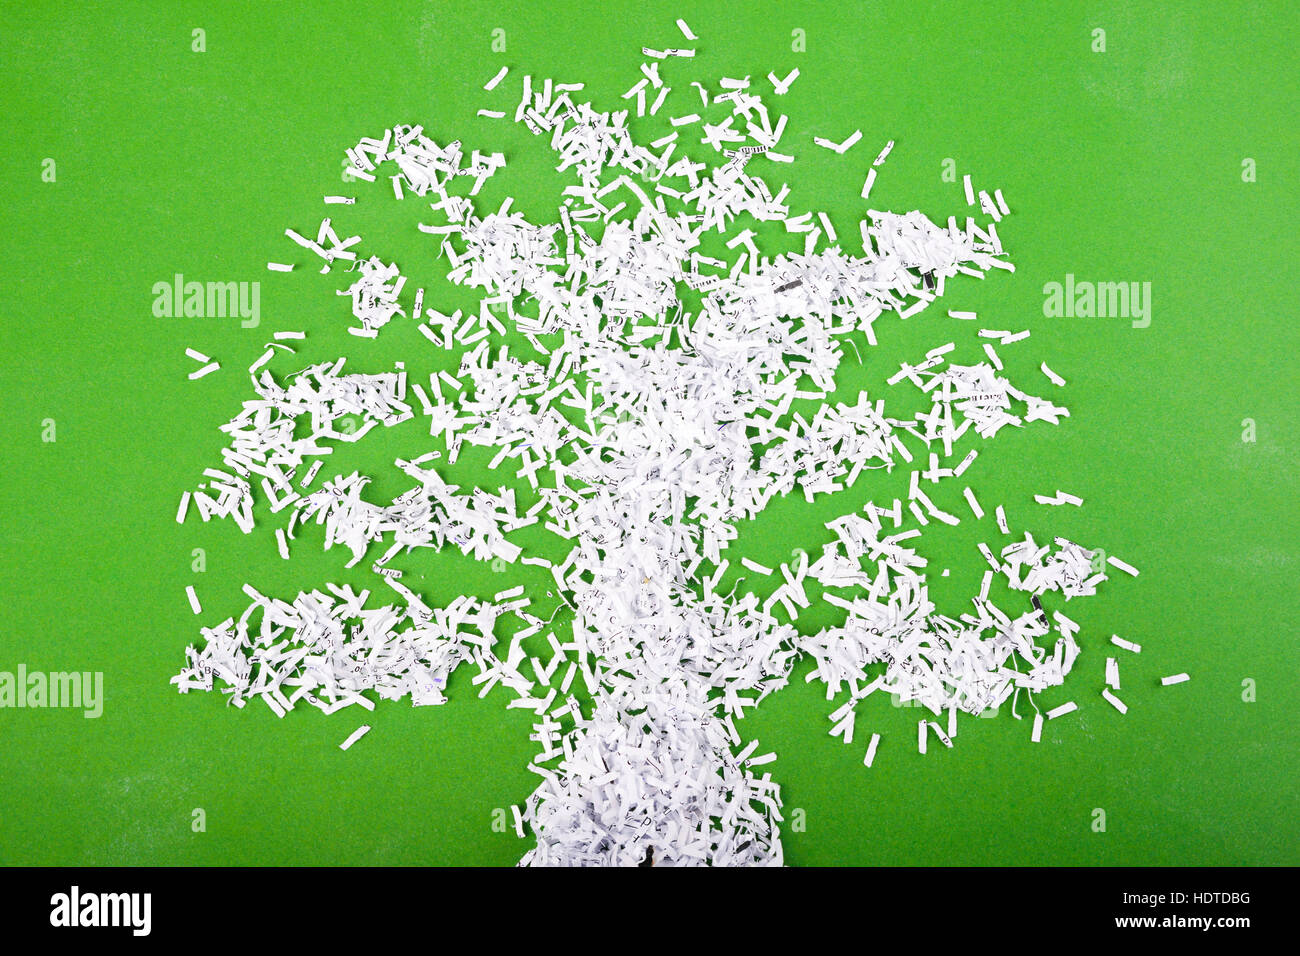 einfache grüne Baum-Symbol gemacht aus Papierschnitzel Partikel auf grünem Hintergrund Stockfoto